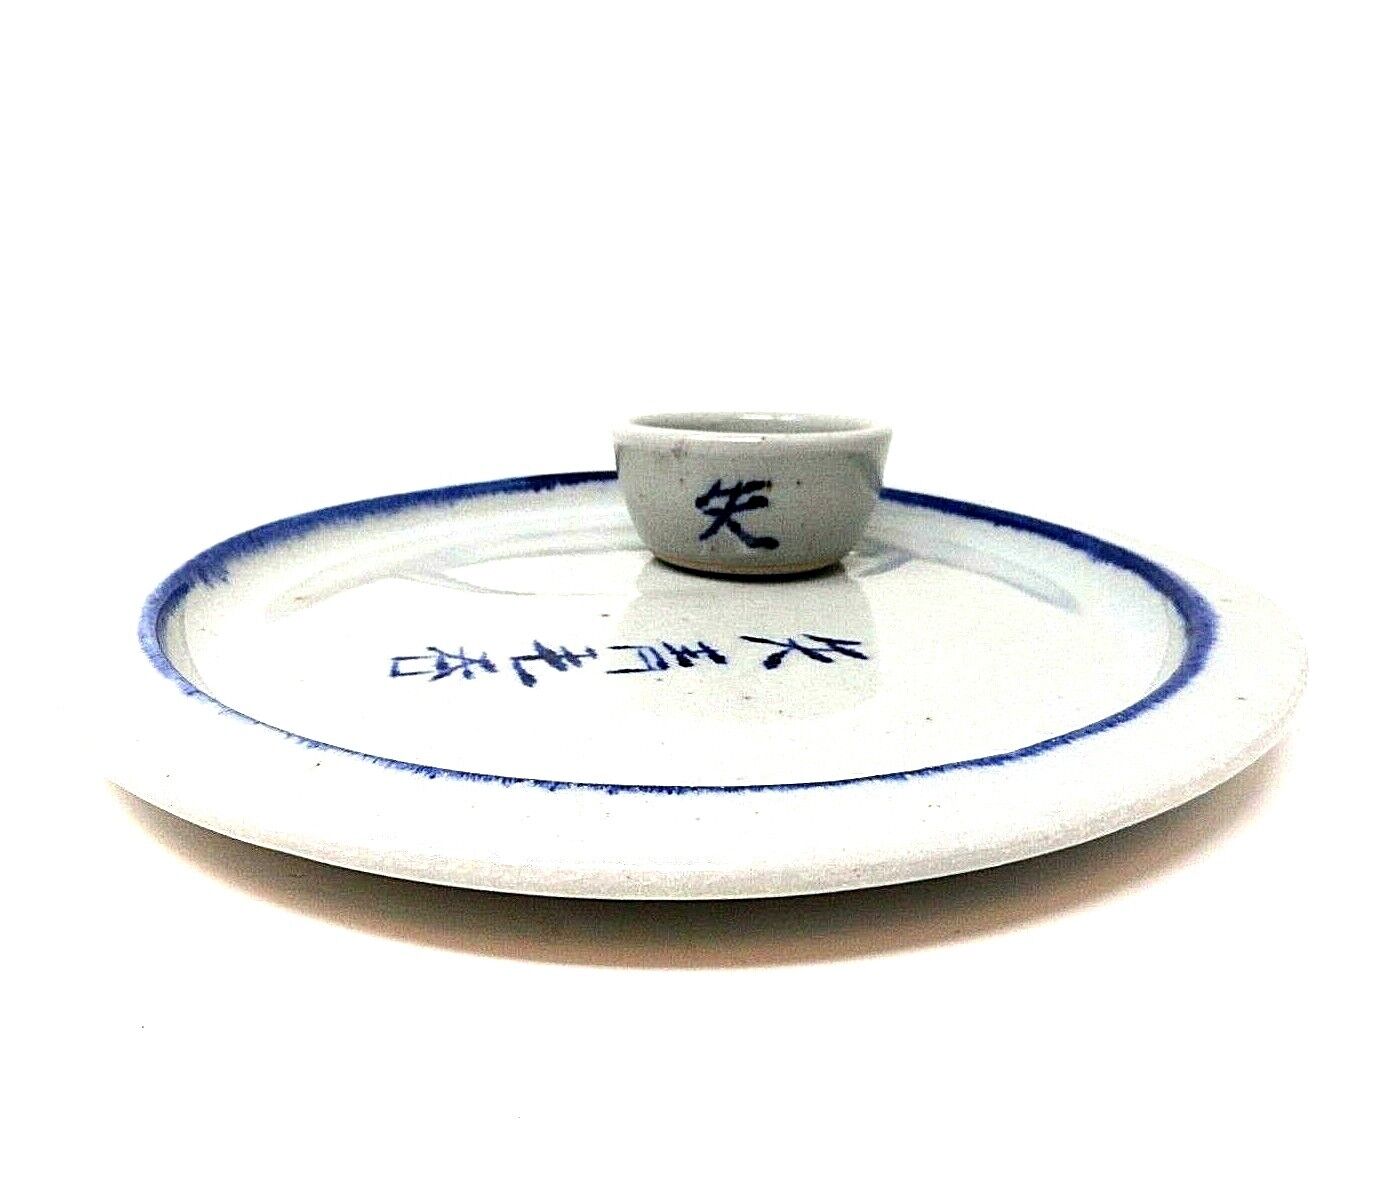 Japanese Sake Cups & Plates - Glazed Stoneware - Signed - Vintage Handmade Wy126